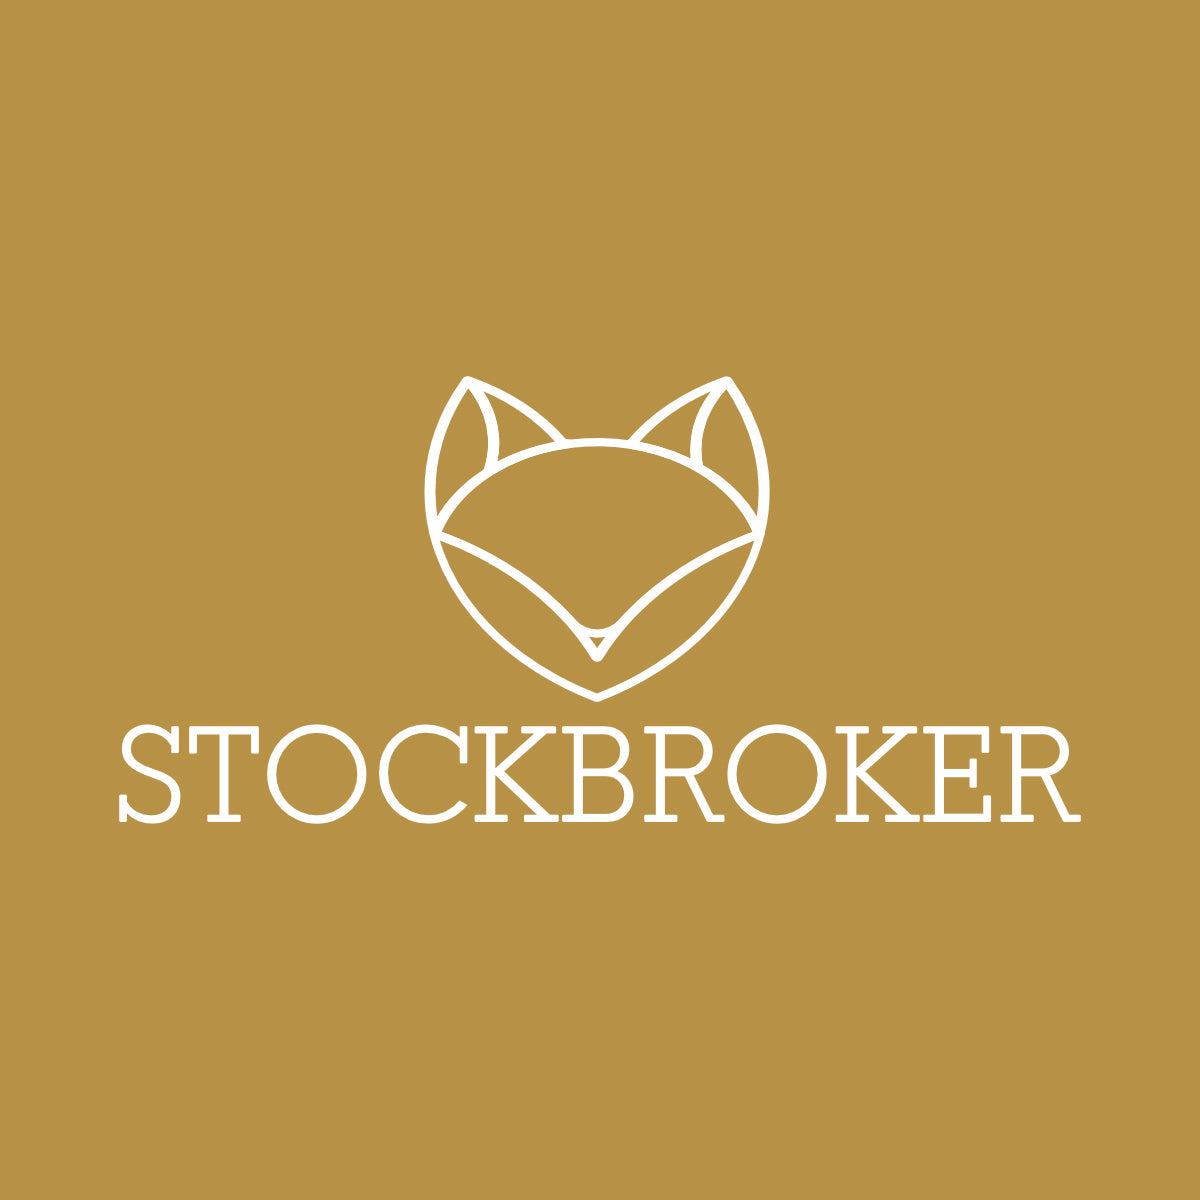 Stock broker shop